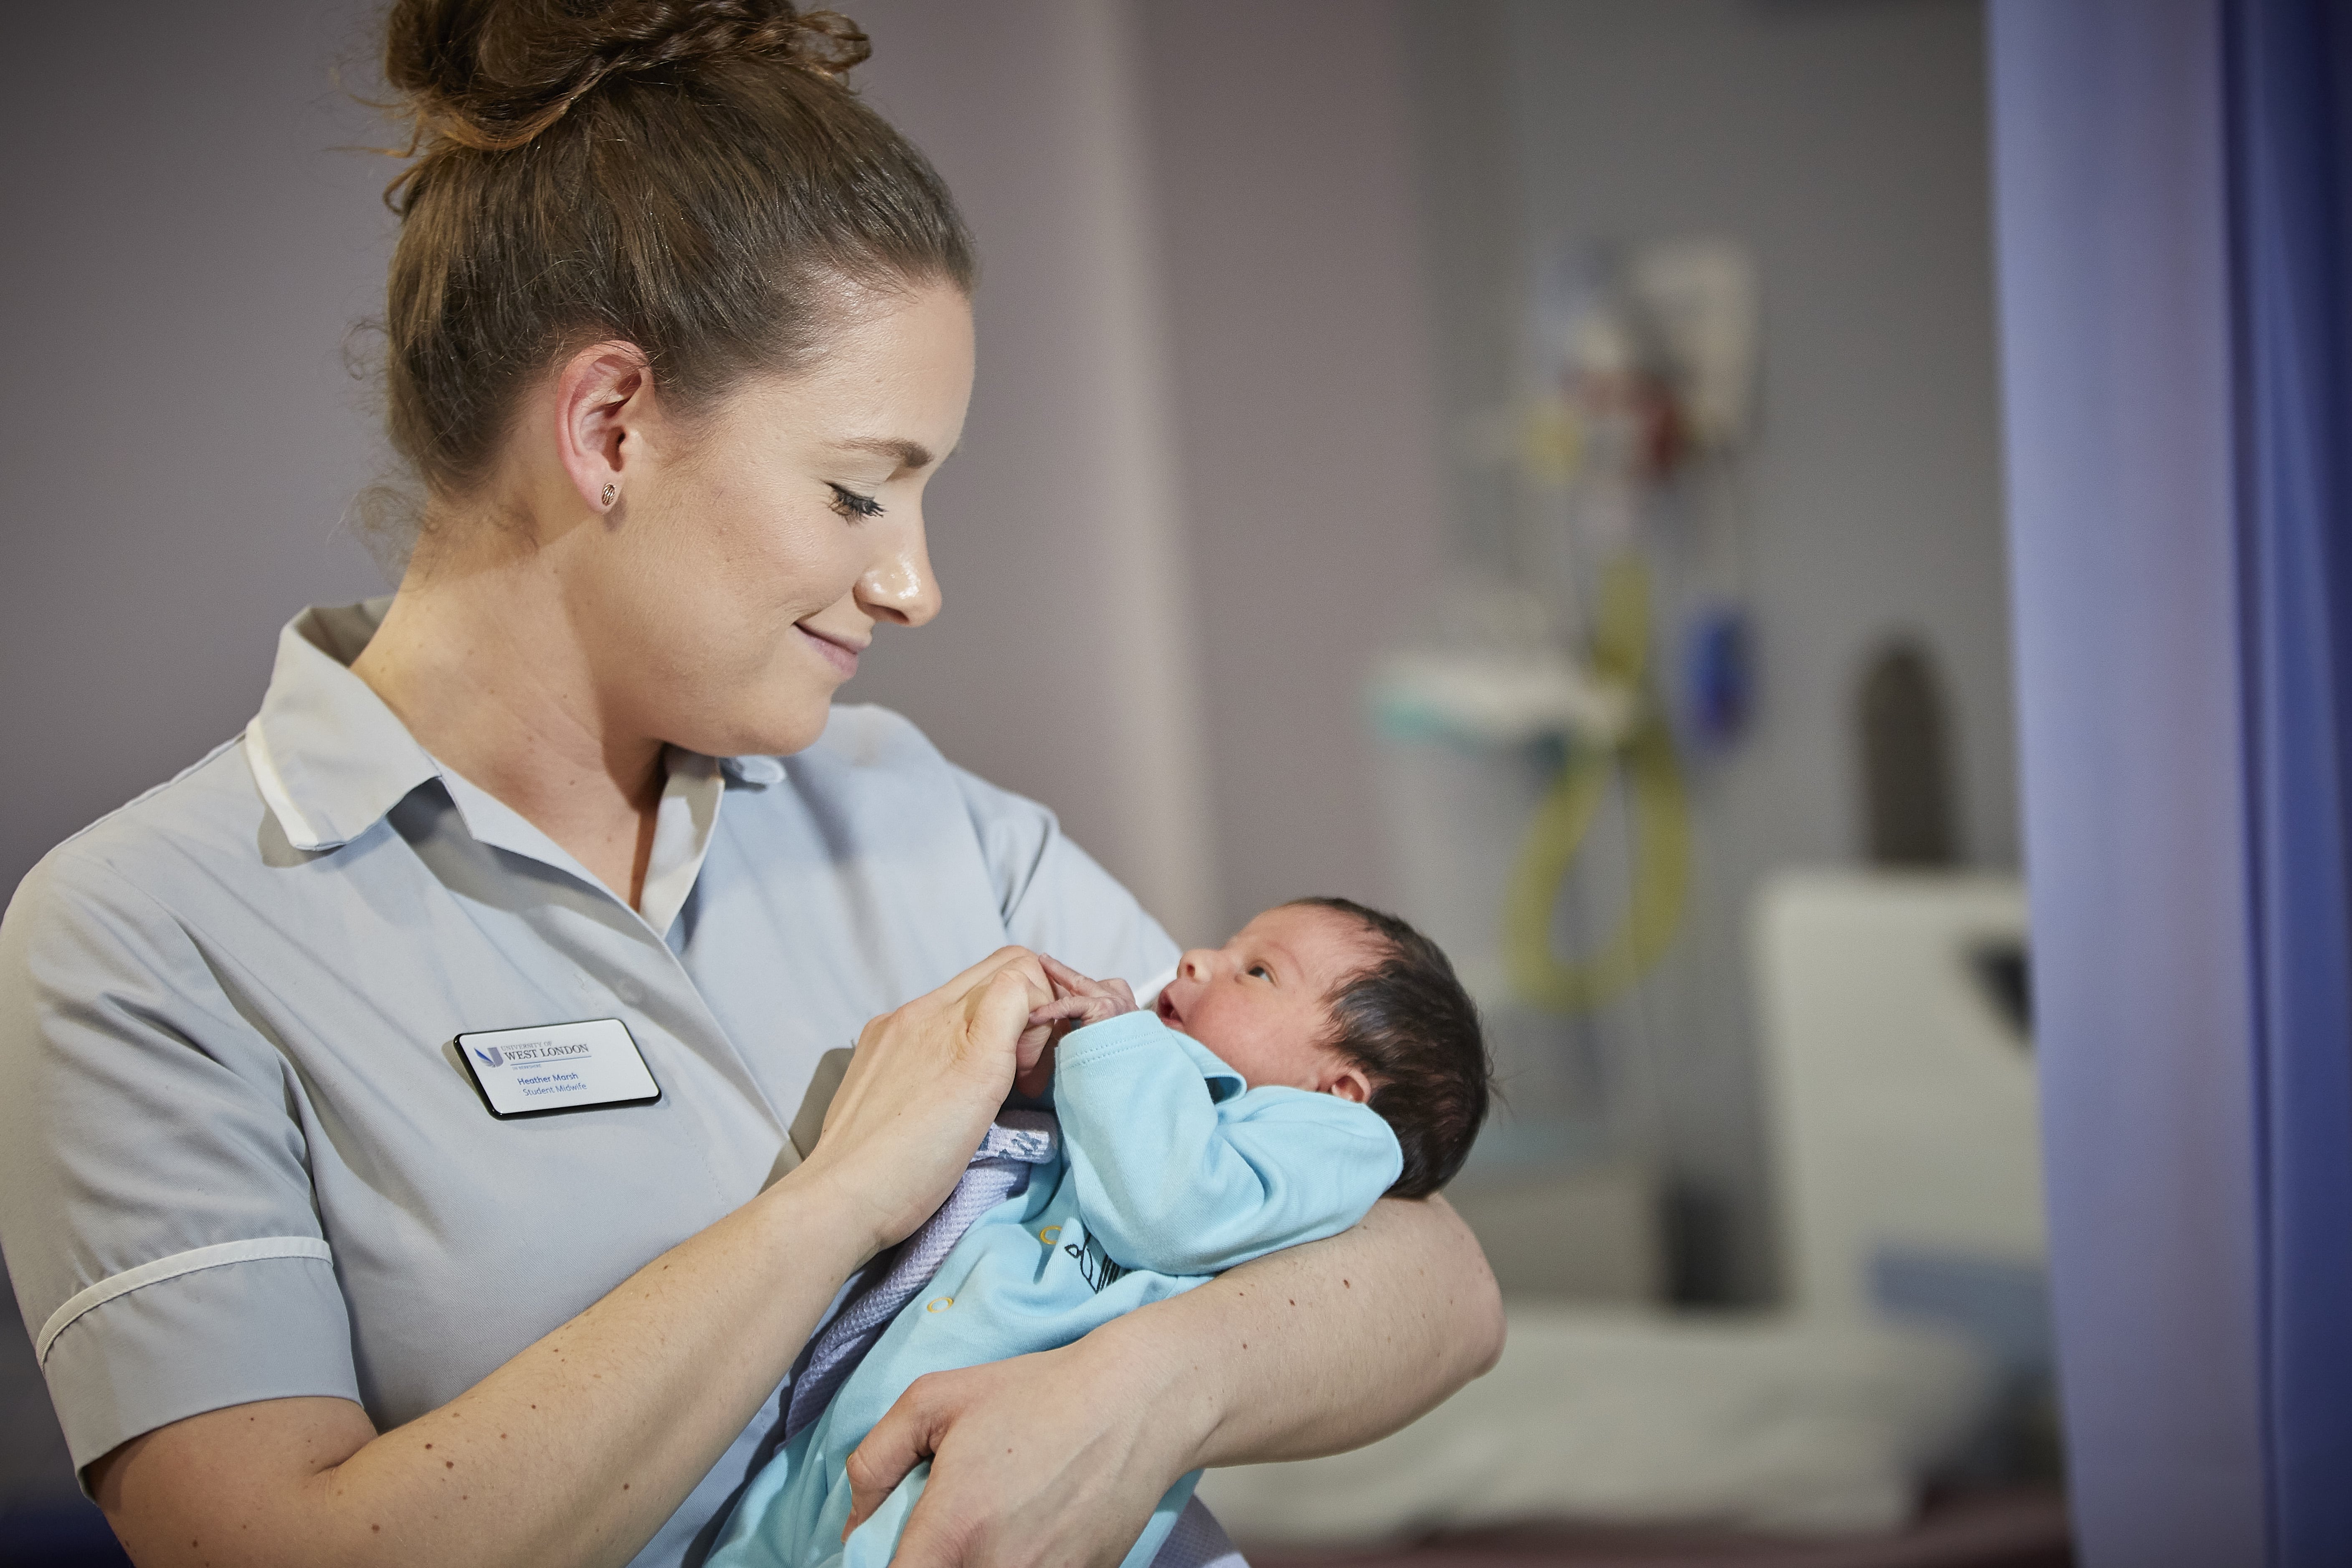 presentation skills of a nurse or midwife